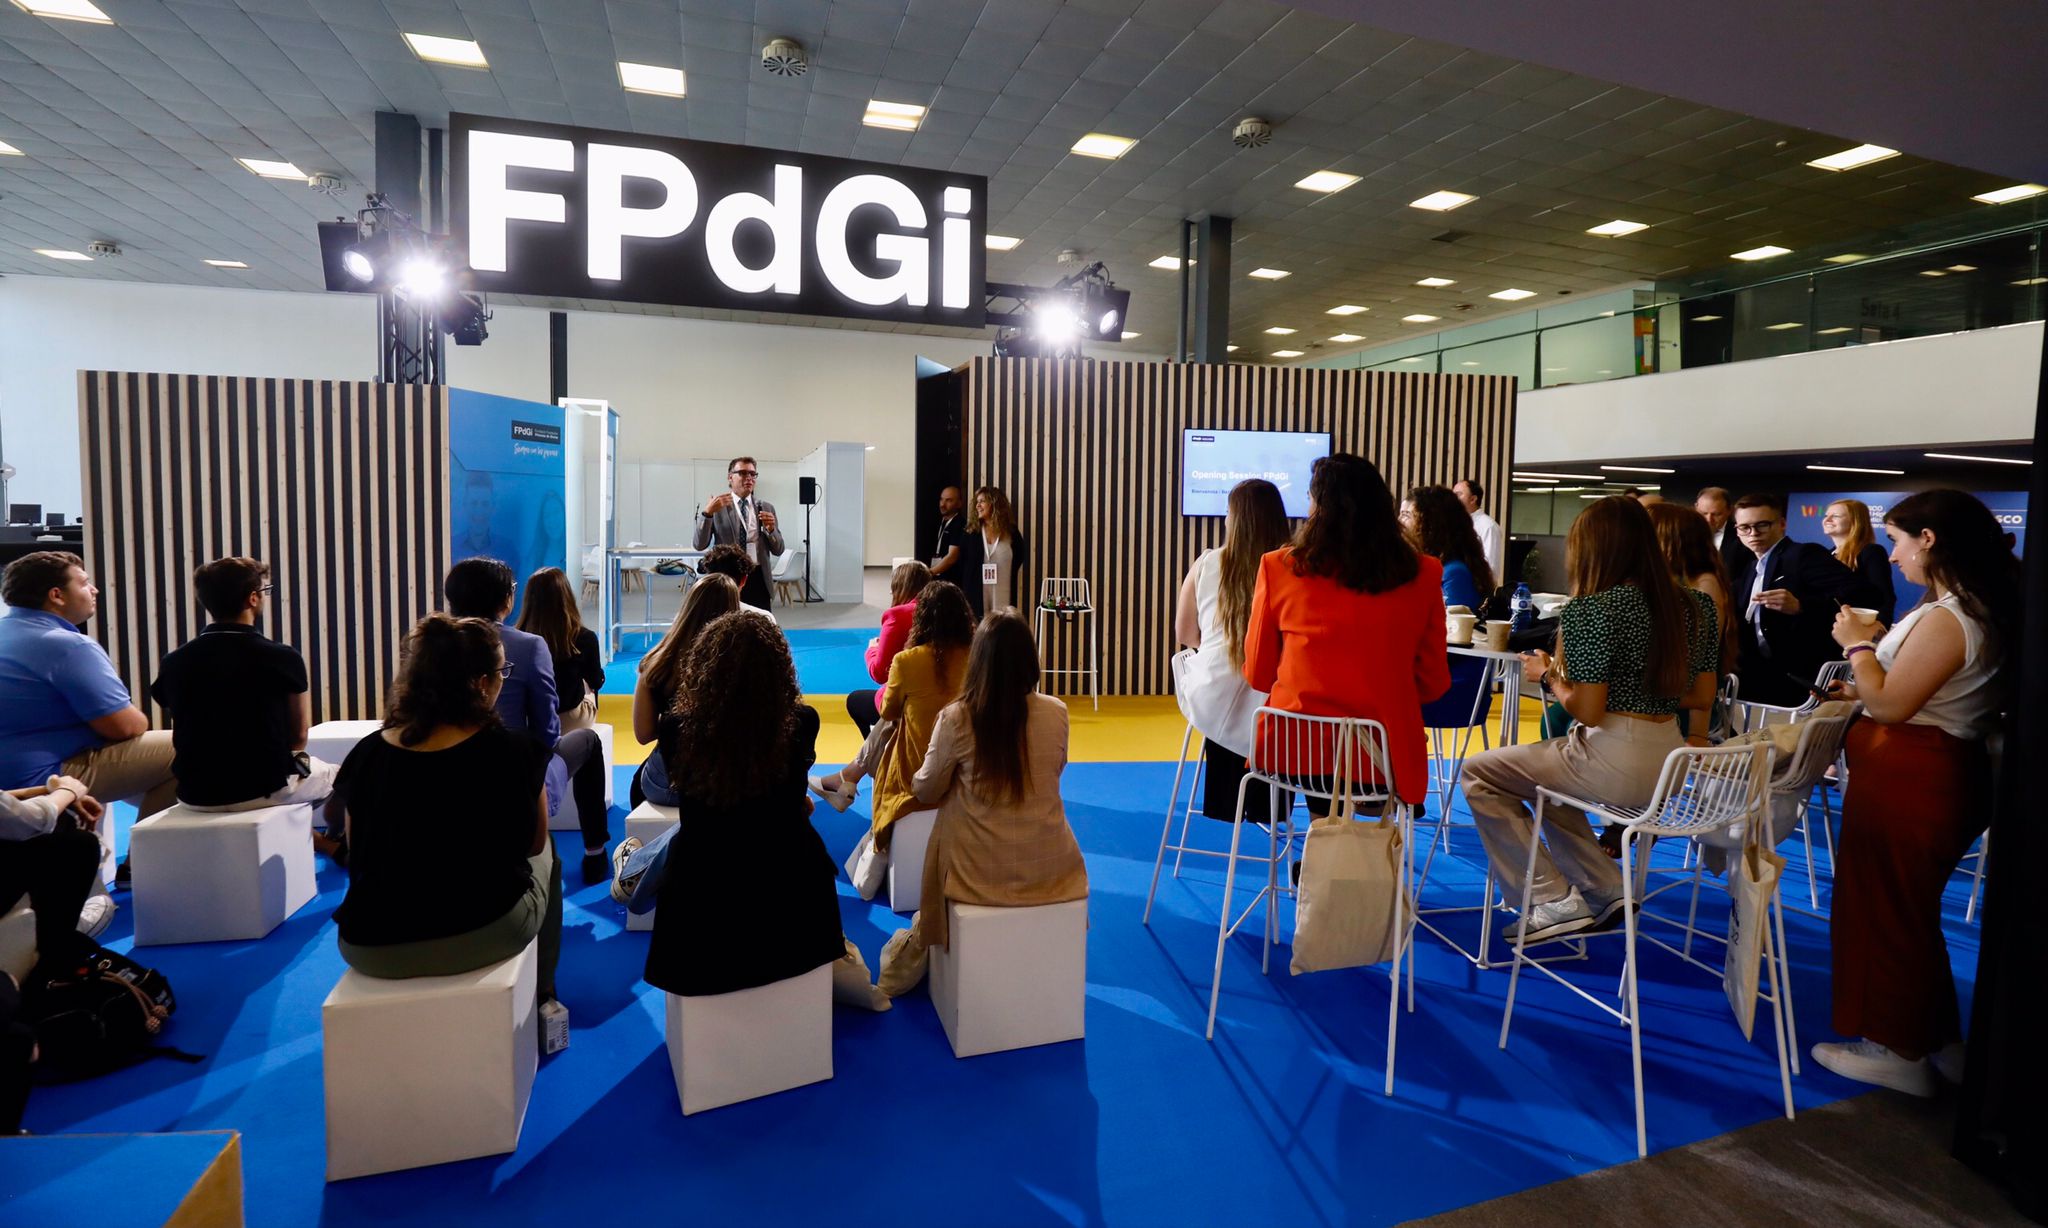 Tecnología al servicio de una educación inclusiva y del bienestar, principales contenidos de la “Agenda FPdGi” en la primera jornada del Congreso de Educación de la UNESCO en Barcelona